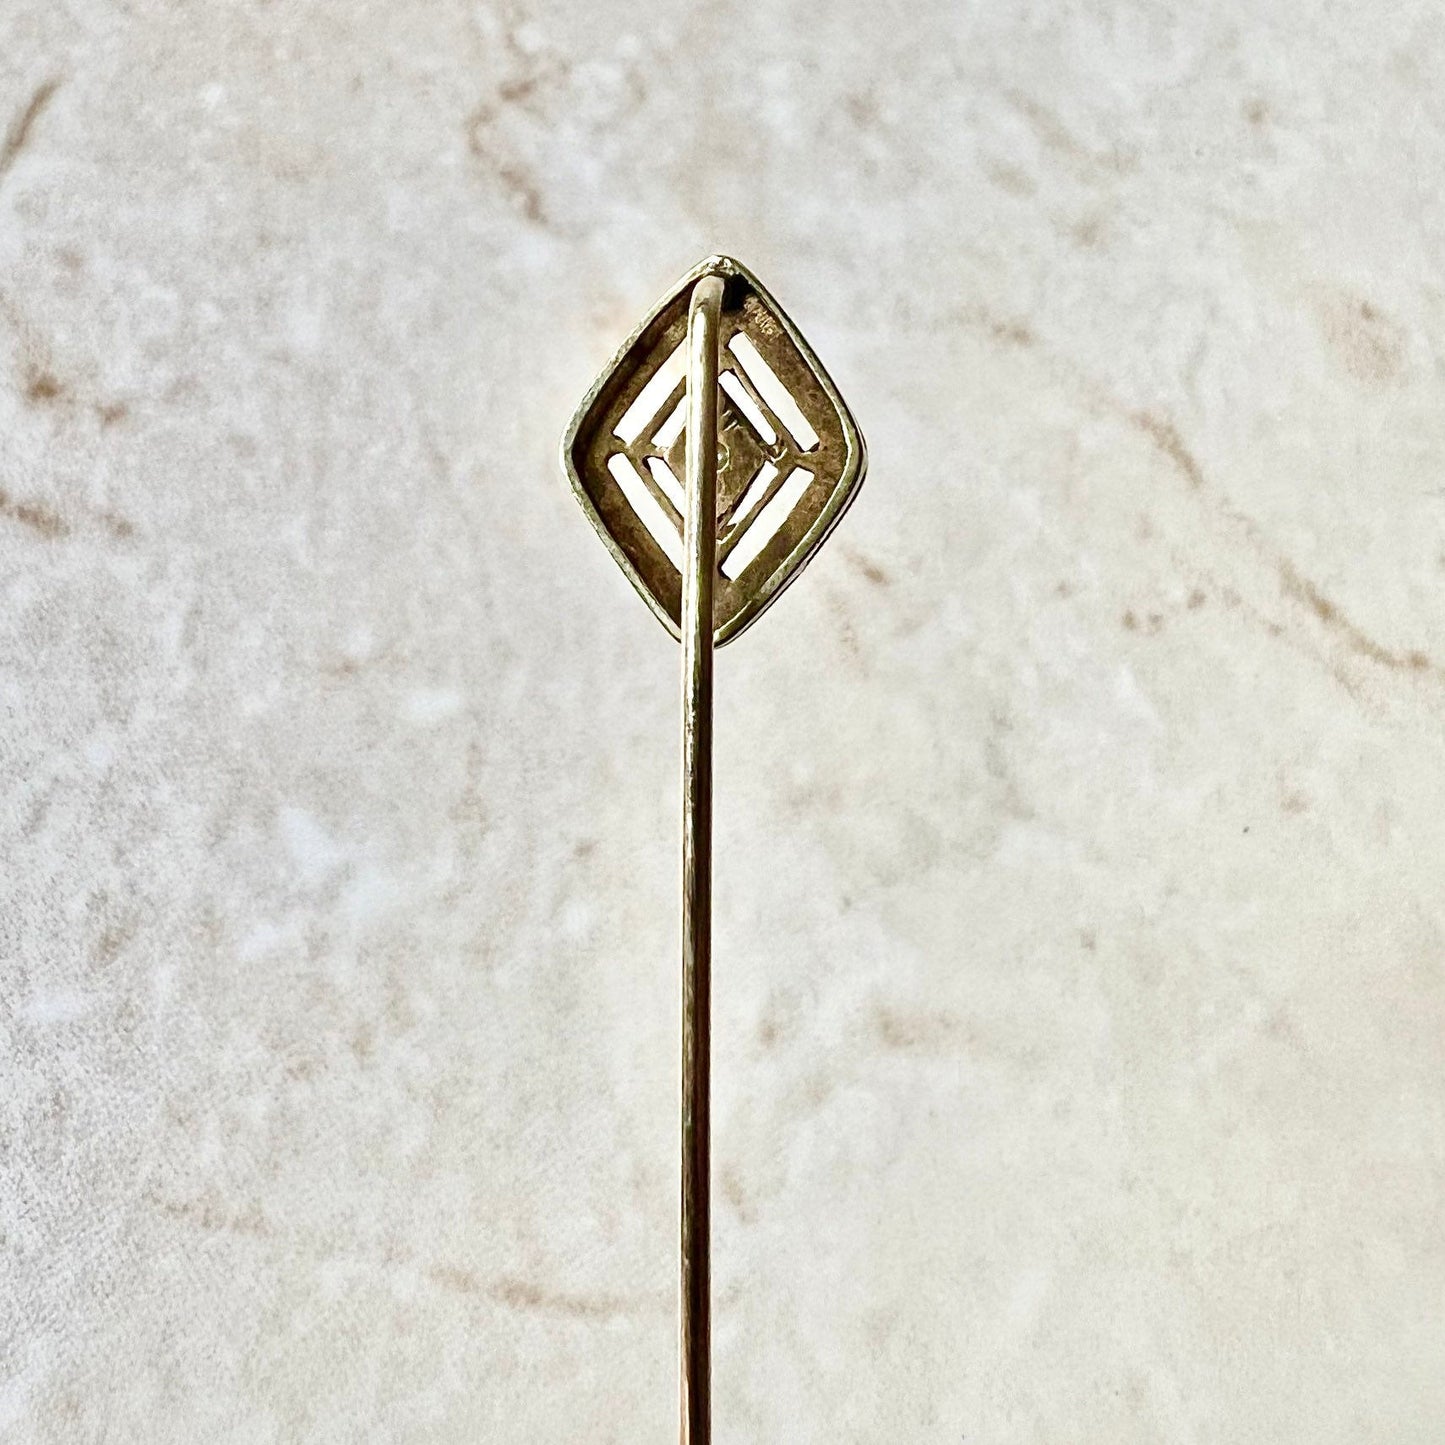 Antique Art Deco 14K Yellow Gold & Platinum Diamond Stick Pin -  Diamond Filigree Stick Pin - Antique Stick Pin -Diamond Solitaire Stick Pin